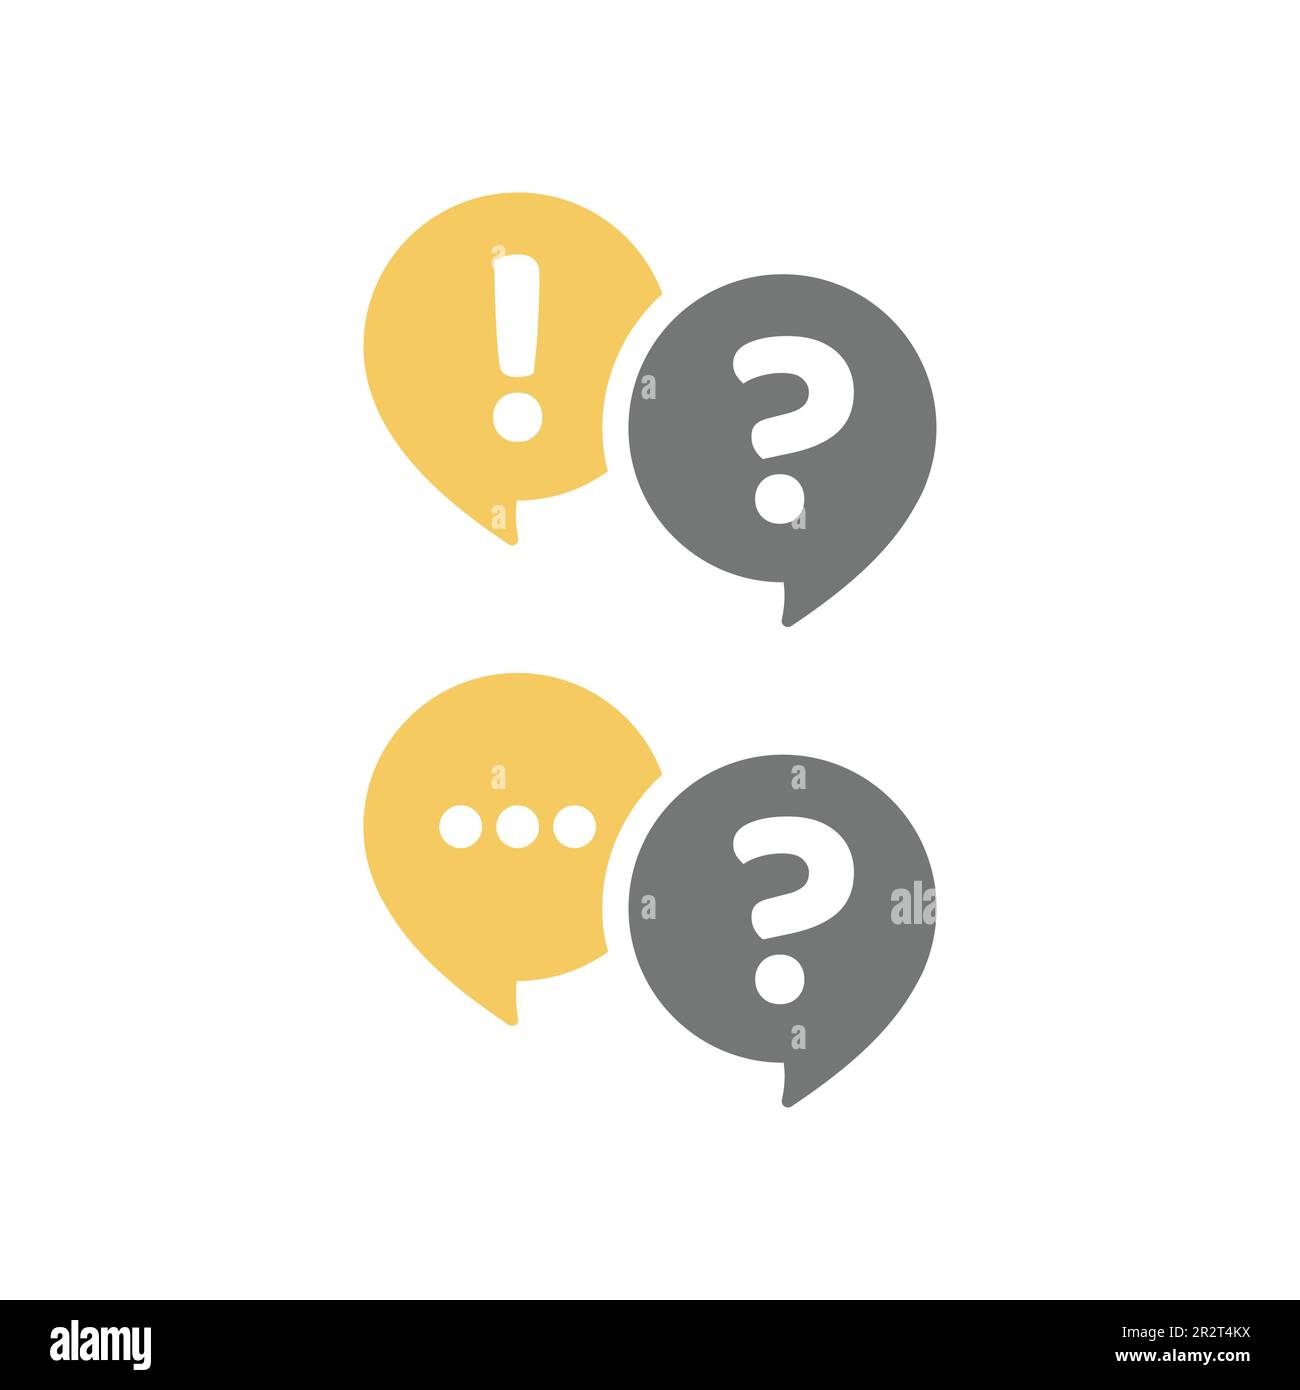 Fumetto della chat di conversazione con punto esclamativo e punto interrogativo. Guida e domande frequenti, comunicazione e conversazione vettore icona set. Illustrazione Vettoriale